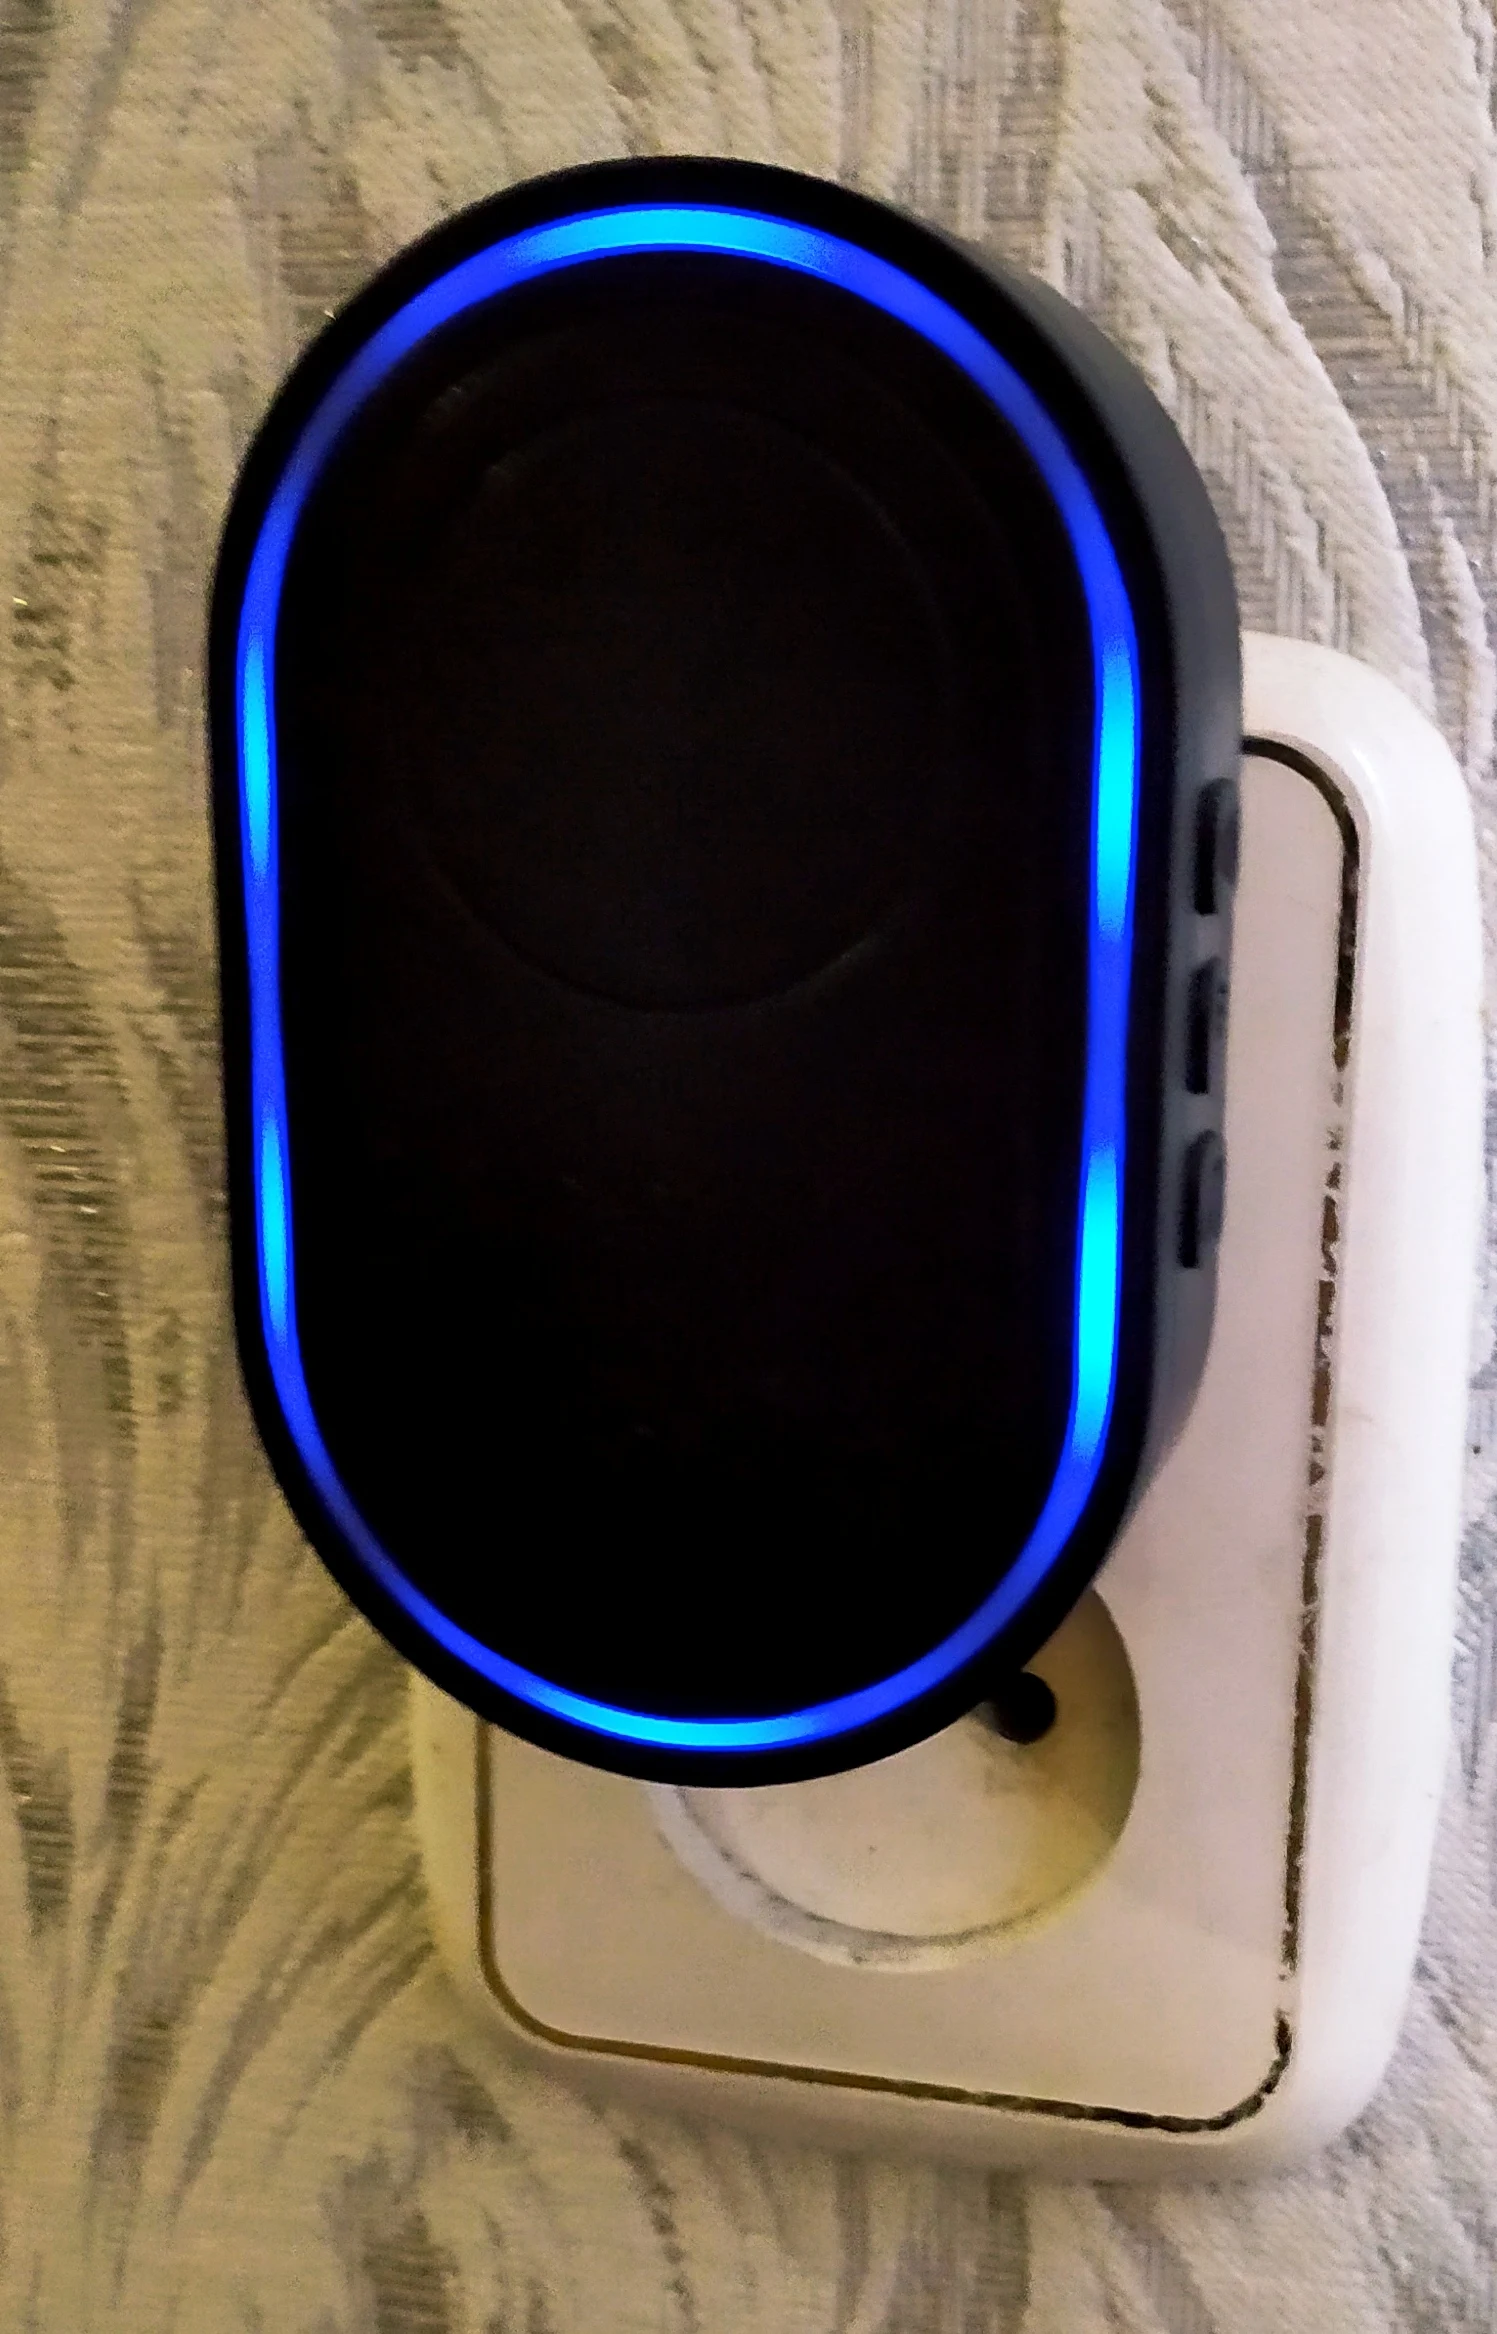 Intelligent Wireless Doorbell Home Welcome Doorbell Waterproof 300m Remote Smart Door Bell Chime EU UK US Plug Optional photo review